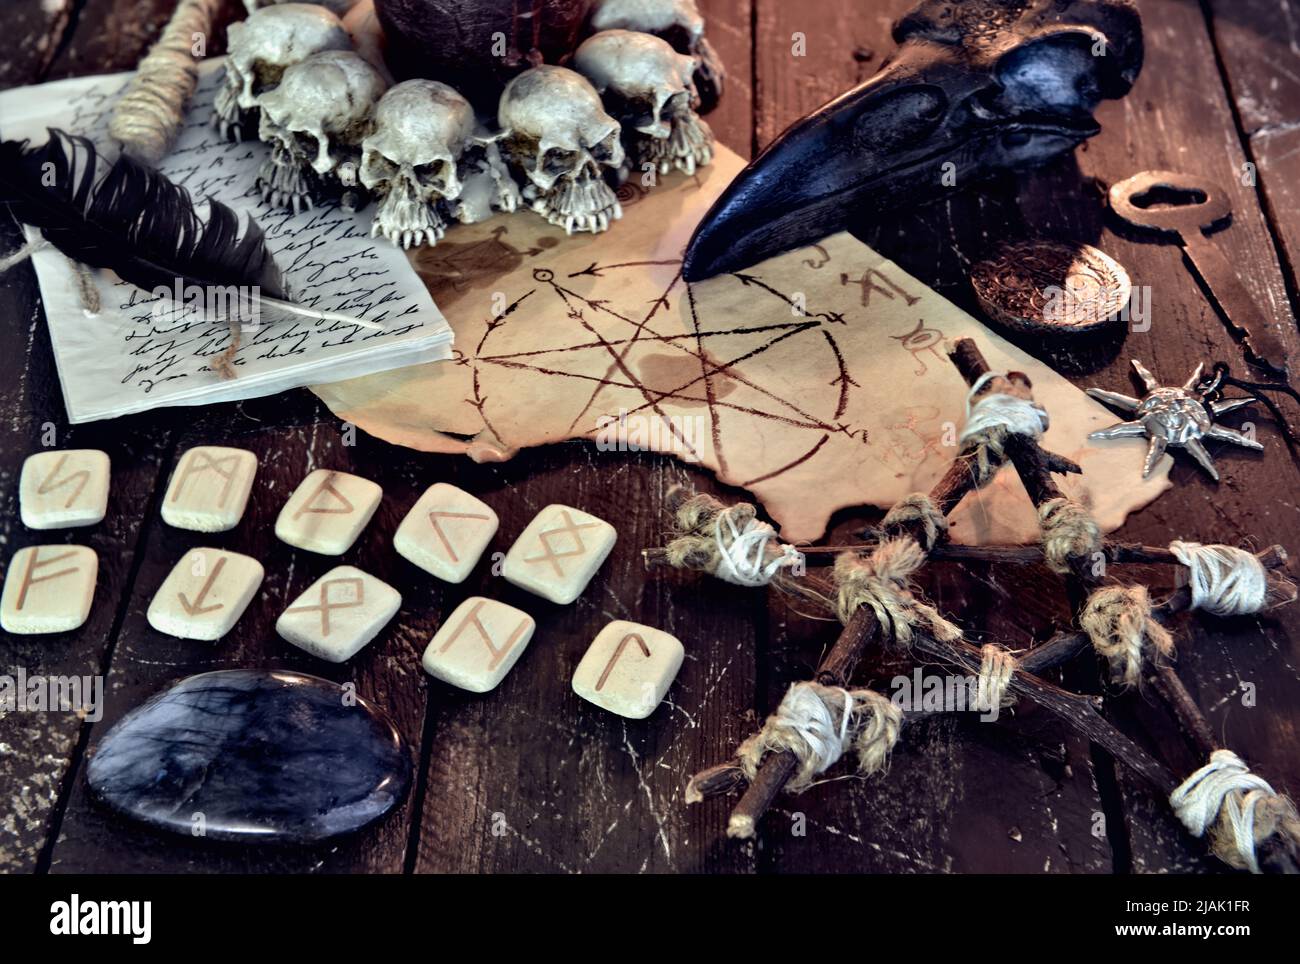 Wicca, vita morta esoterica e occulta con oggetti magici d'epoca e rune  sull'altare della tavola delle streghe per rituali mistici e racconti di  fortuna. Halloween e Foto stock - Alamy